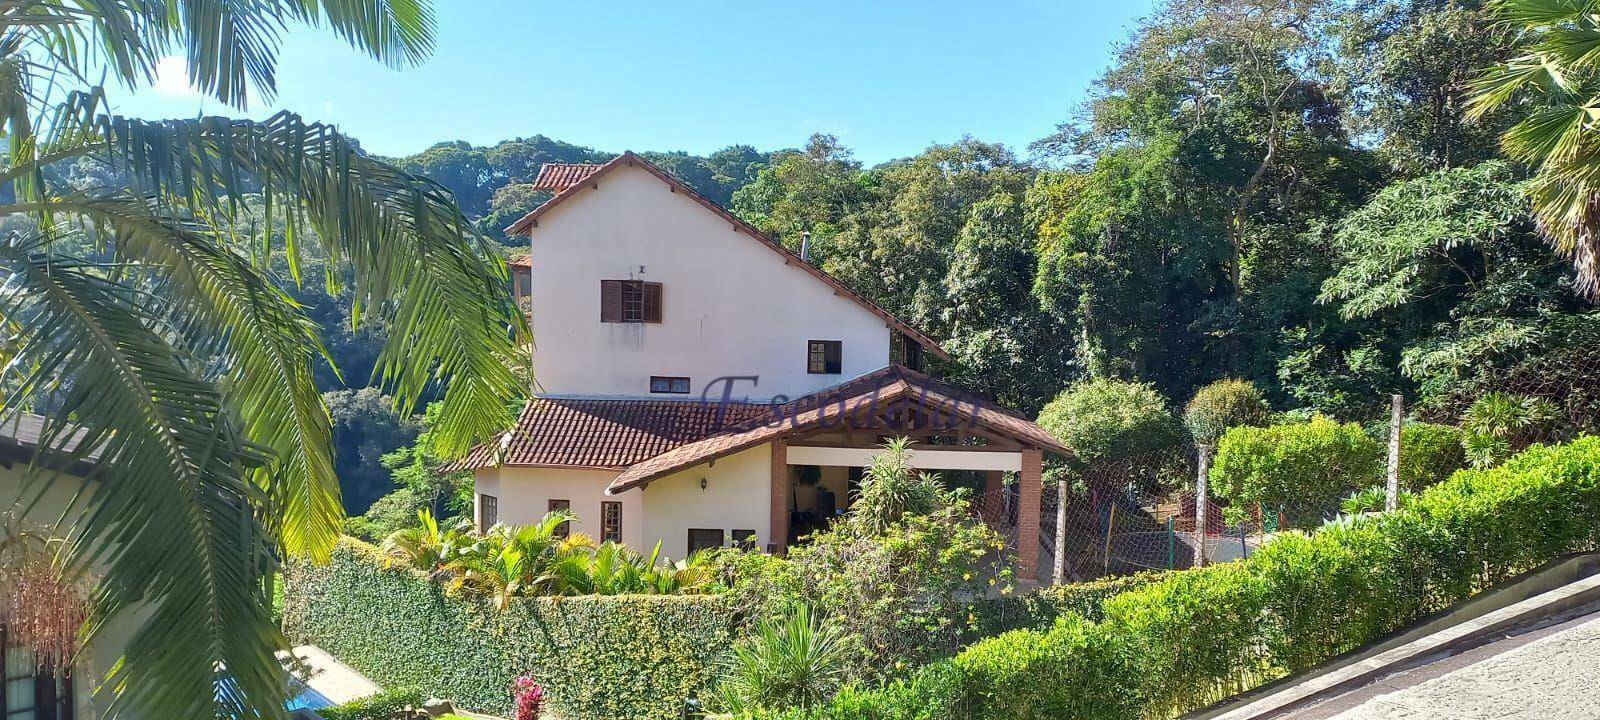 Casa com 4 dormitórios à venda, 428 m² por R$ 1.950.000,00 - Alpes da Cantareira - Mairiporã/SP